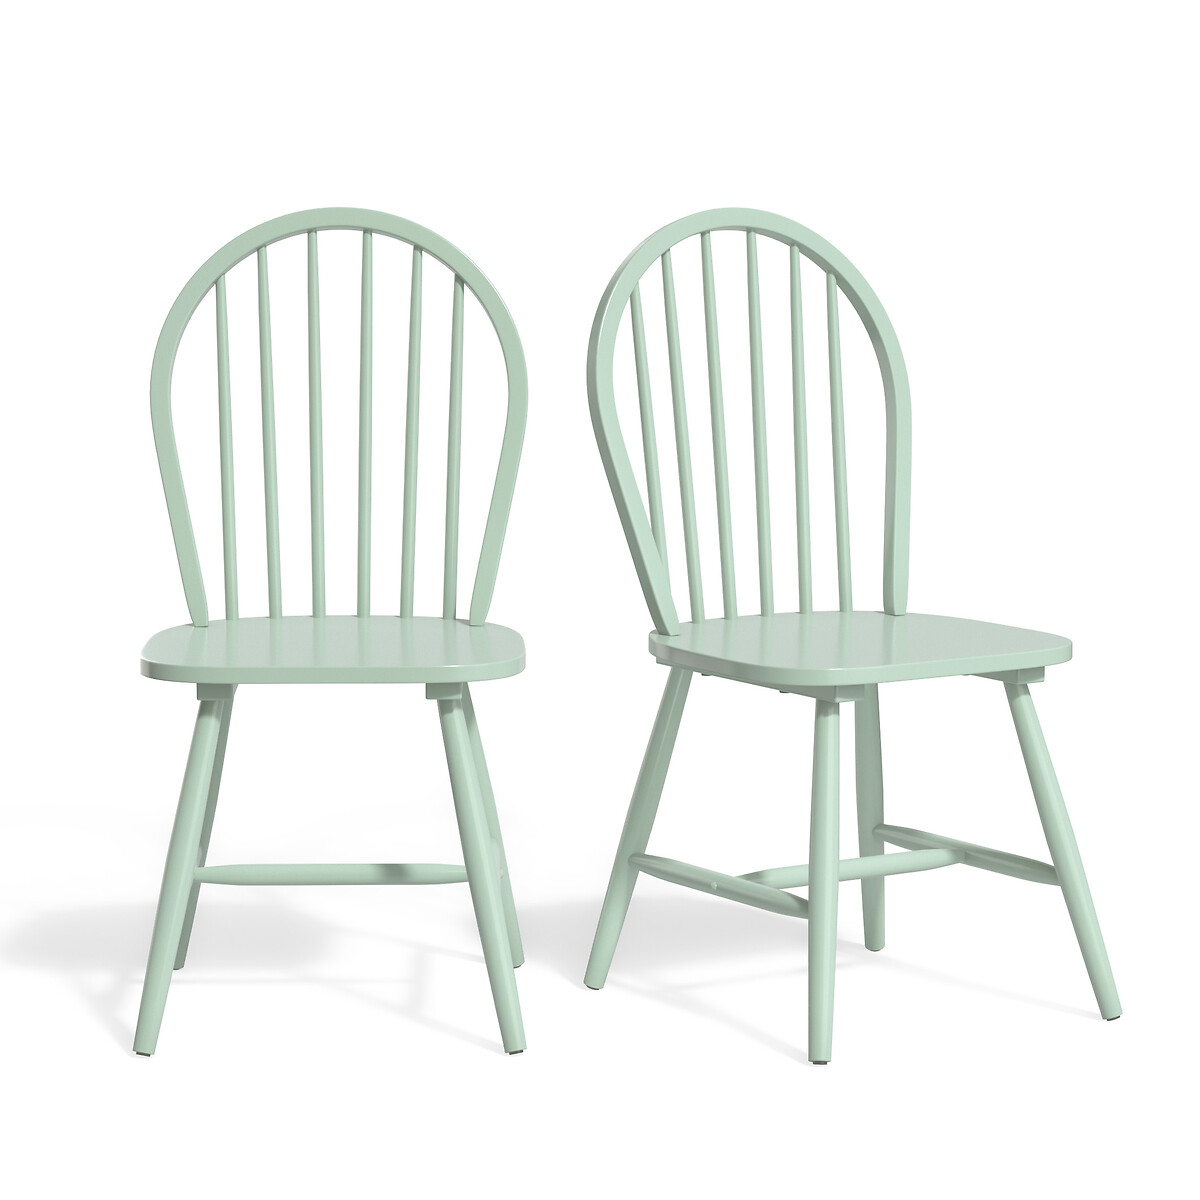 Комплект из 2 стульев с решетчатой спинкой WINDSOR единый размер зеленый комплект стульев кукки зеленый зеленый